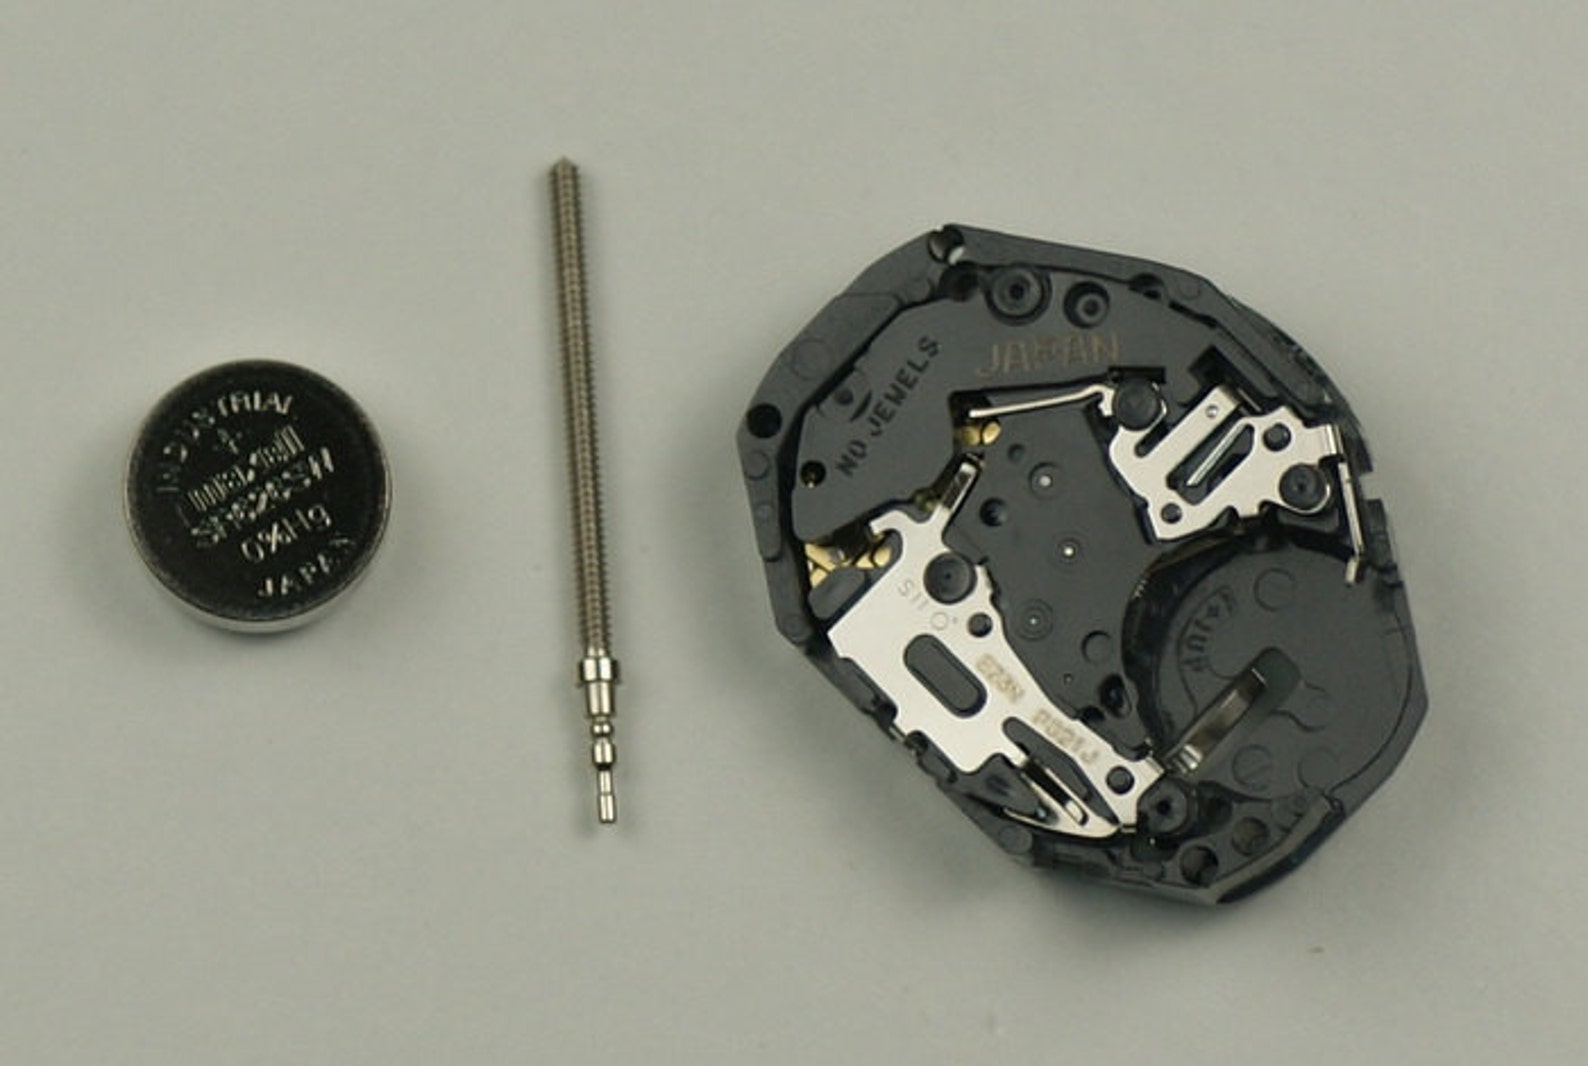 Replacement quartz movement Hattori Japan PC21A calibre watch | Etsy